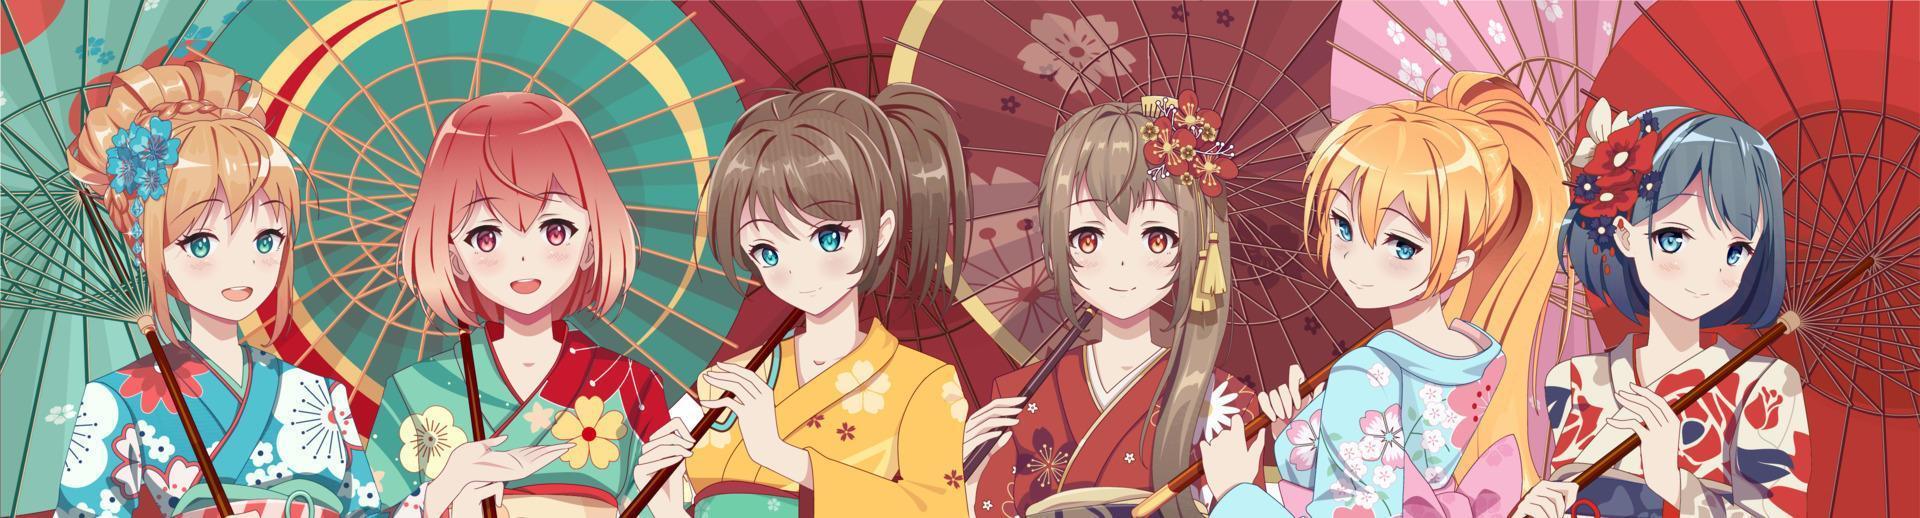 groep anime-mangameisjes in traditioneel japans kimonokostuum met papieren paraplu. vectorillustratie op geïsoleerde achtergrond vector